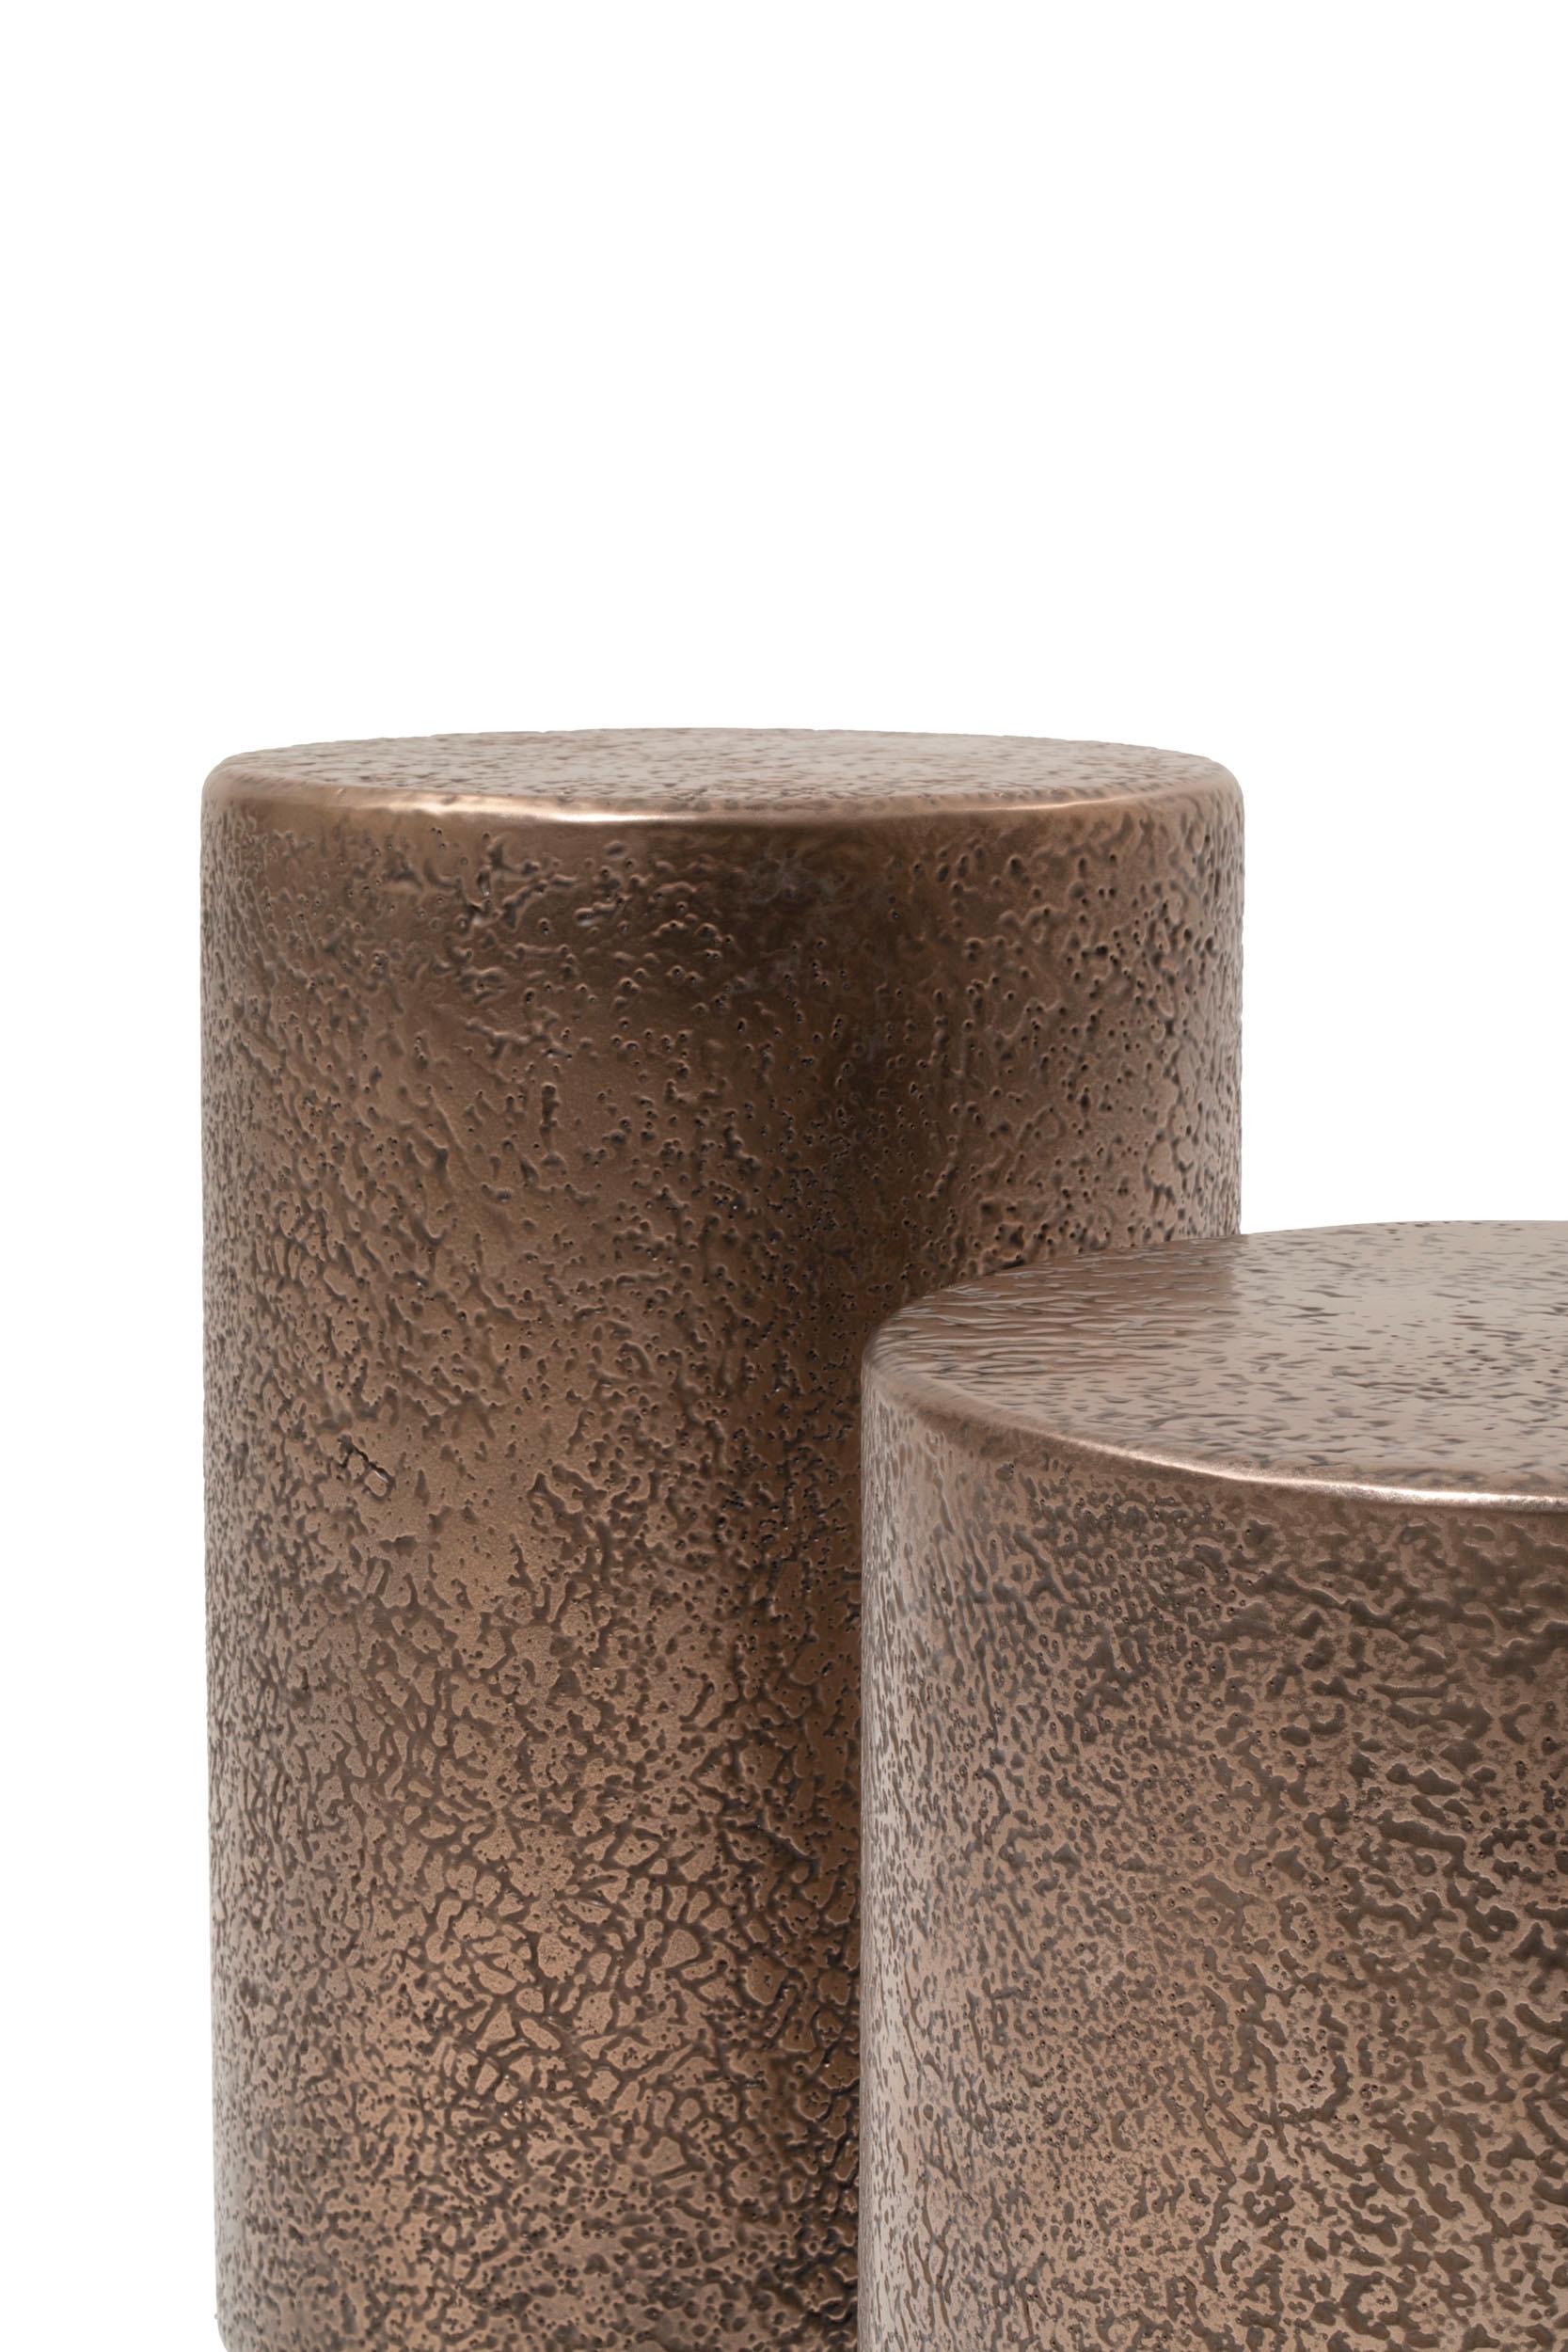 Table basse Servomuto en bois courbé avec finition extérieure en métal bronze liquide poli à la main.
La surface gaufrée est faite à la main, ce qui rend chaque pièce unique.